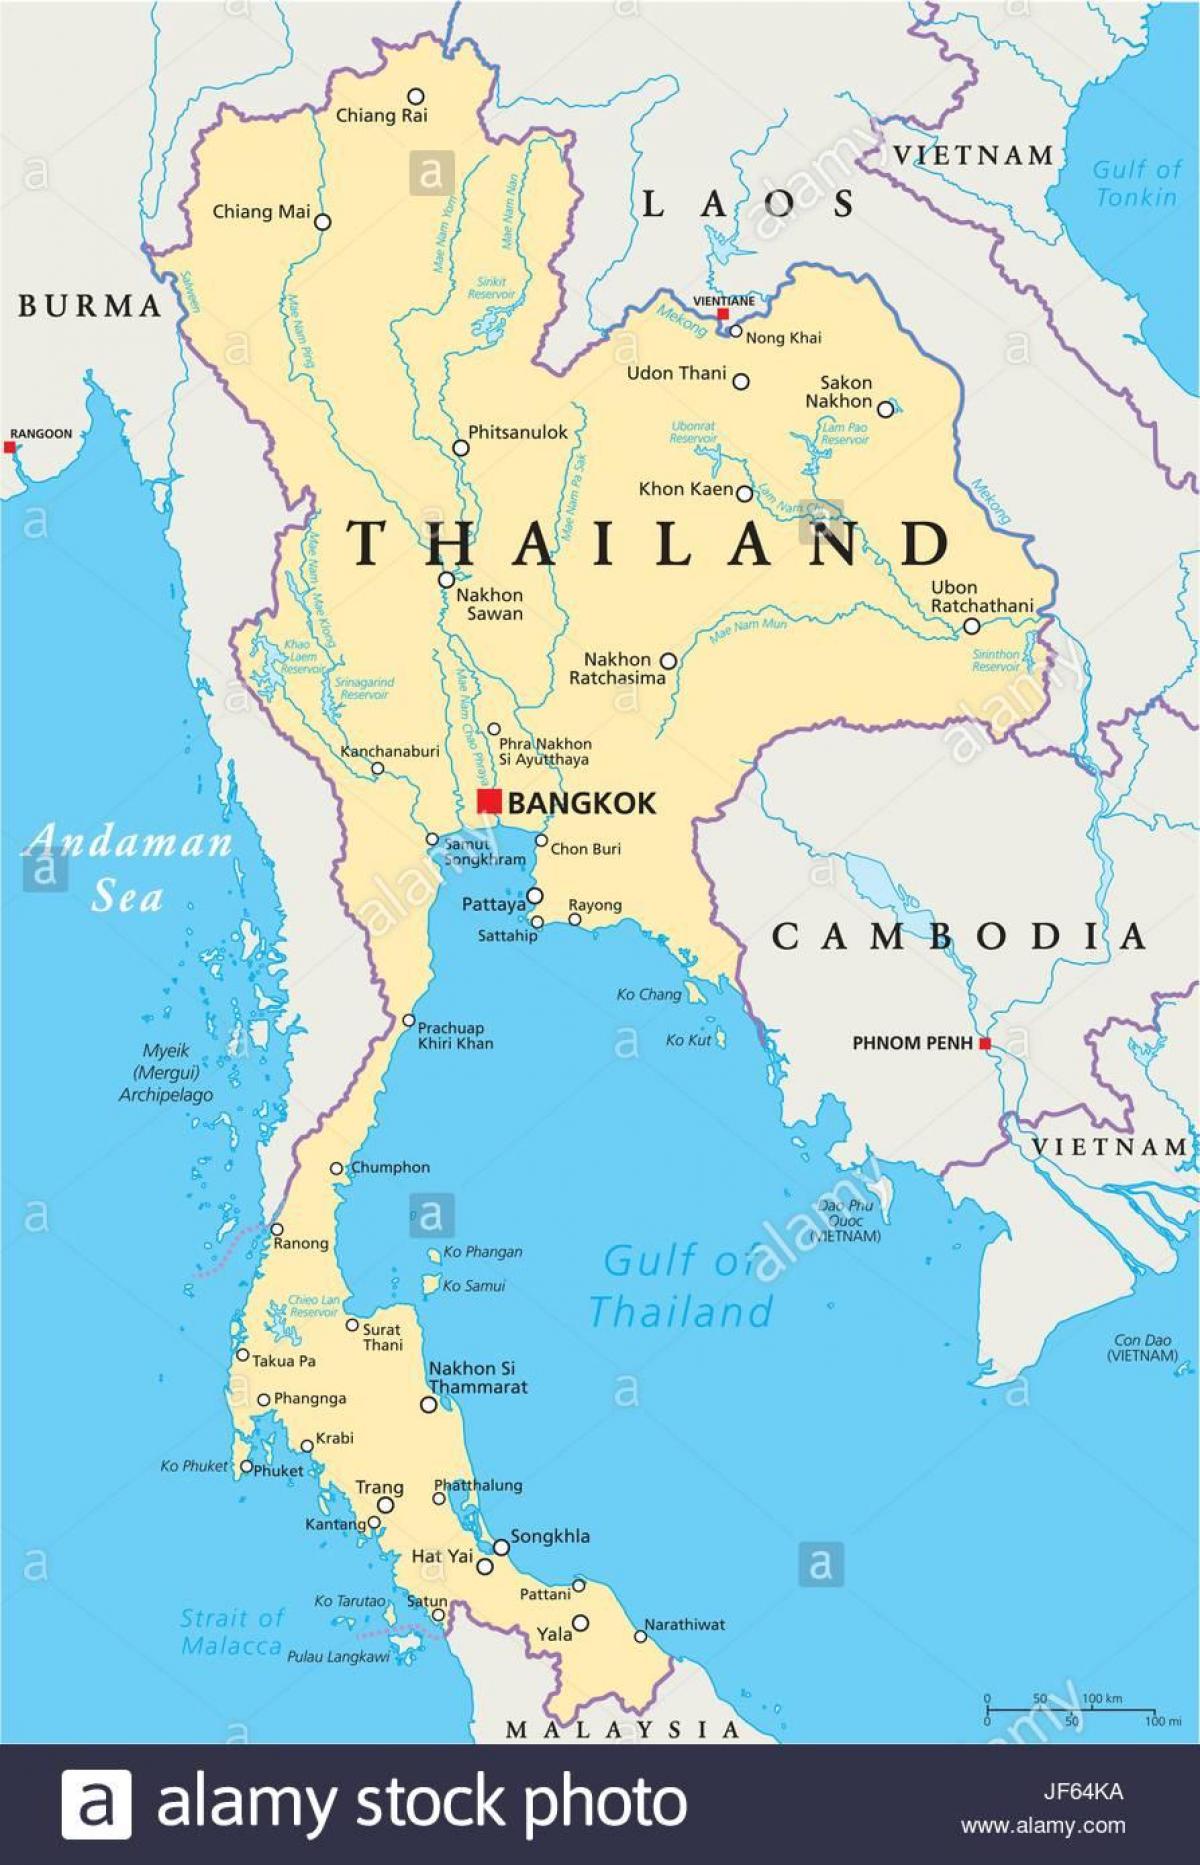 bangkok trên bản đồ thế giới